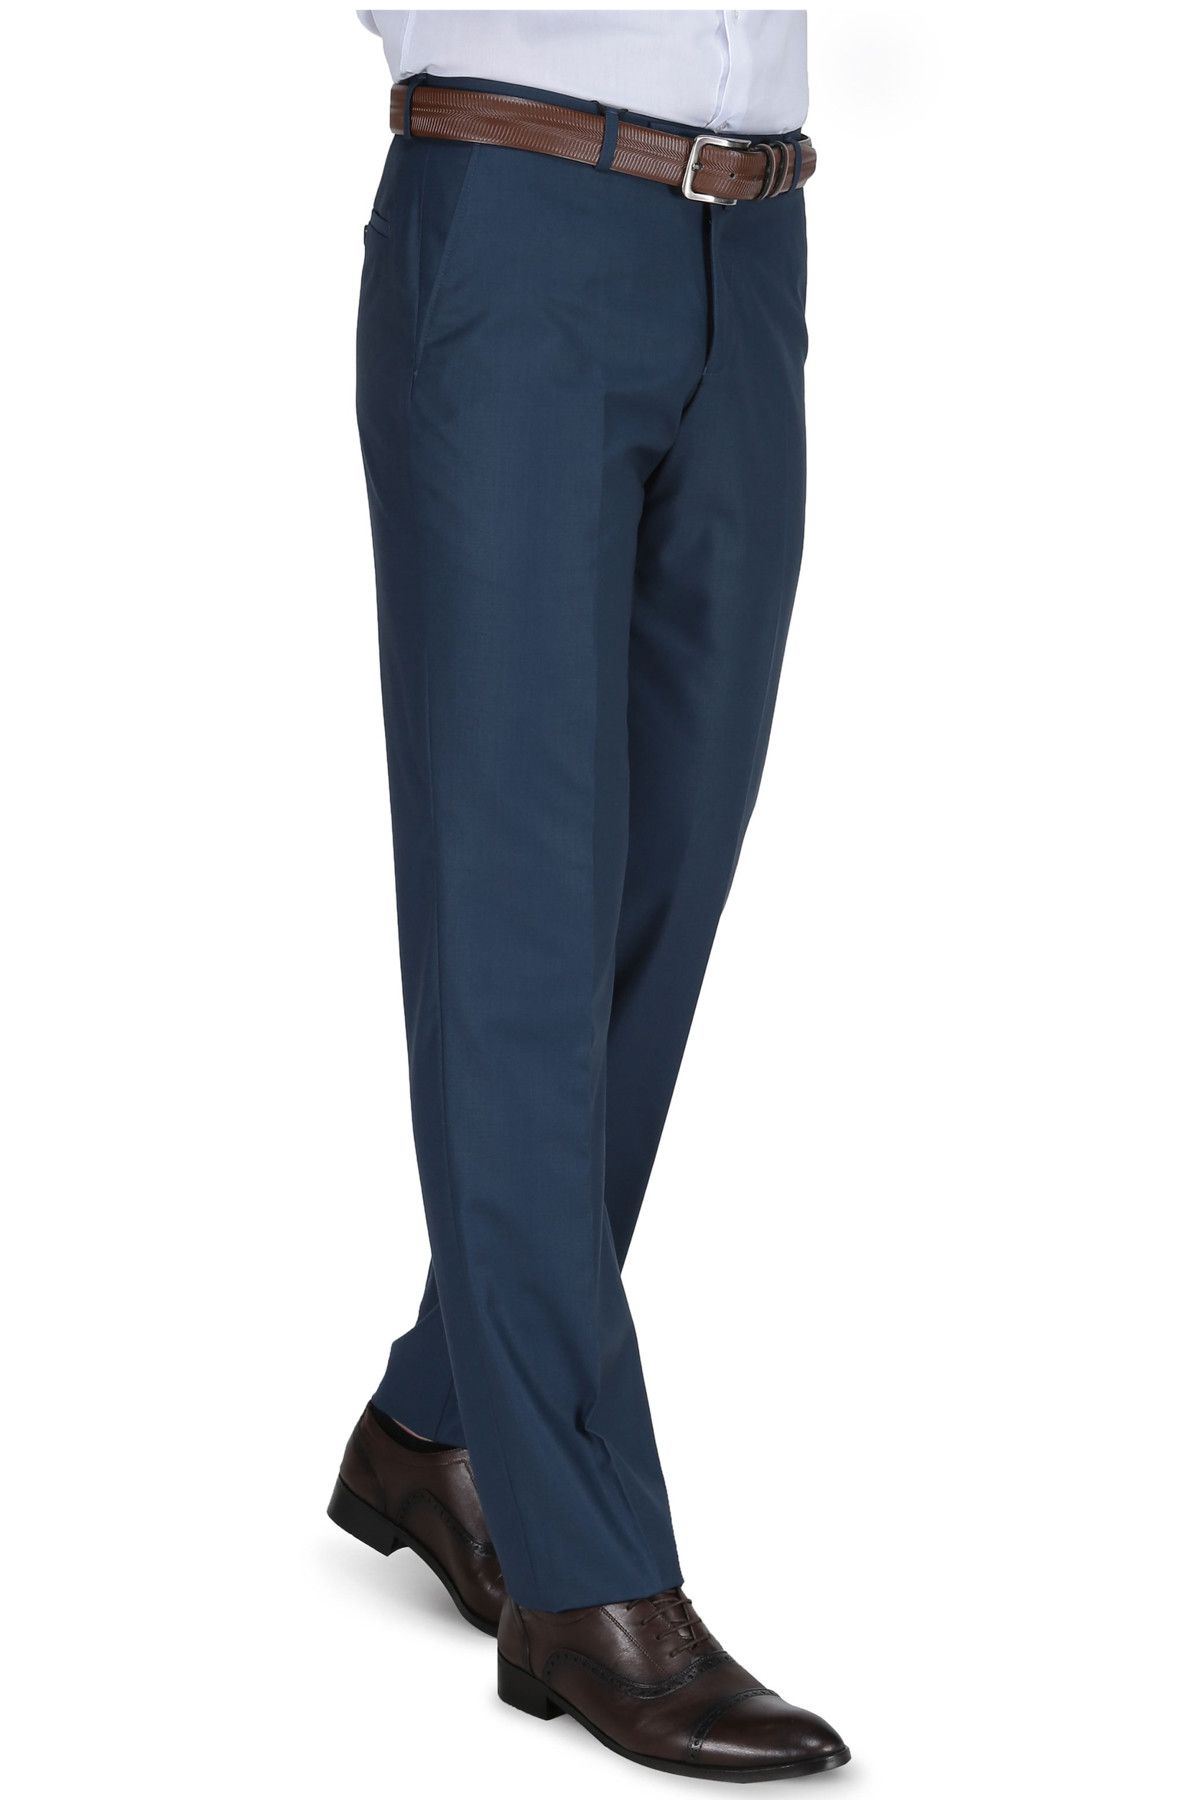 Buenza Erkek 120S Slim Fit PantolonParlament-3W2M0115D032